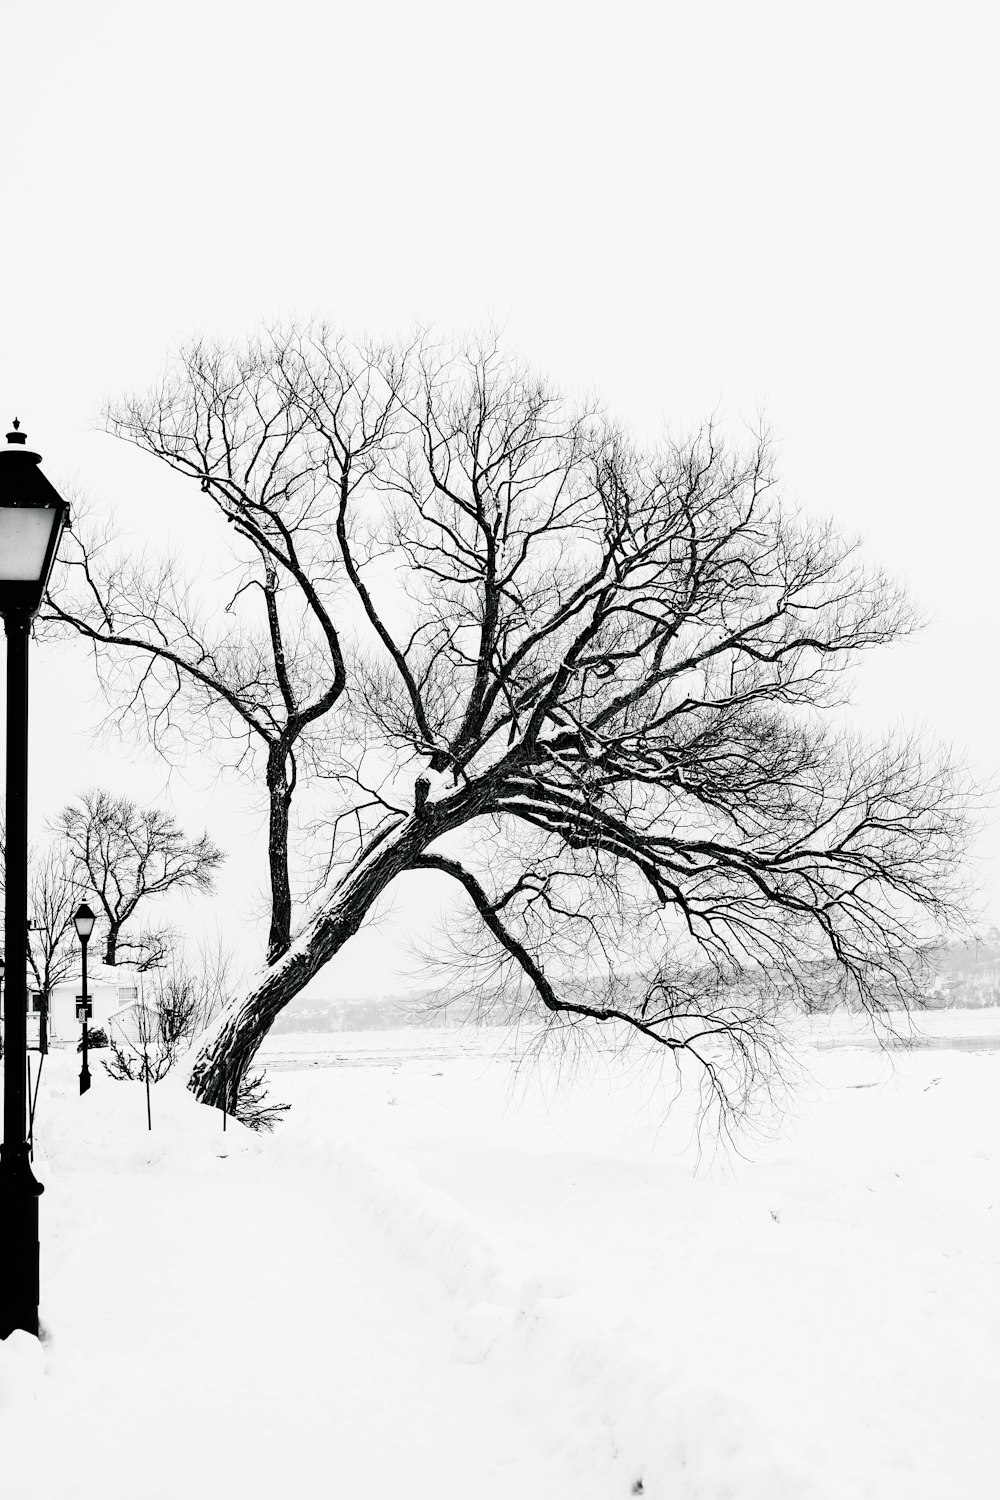 kahler Baum auf schneebedecktem Boden